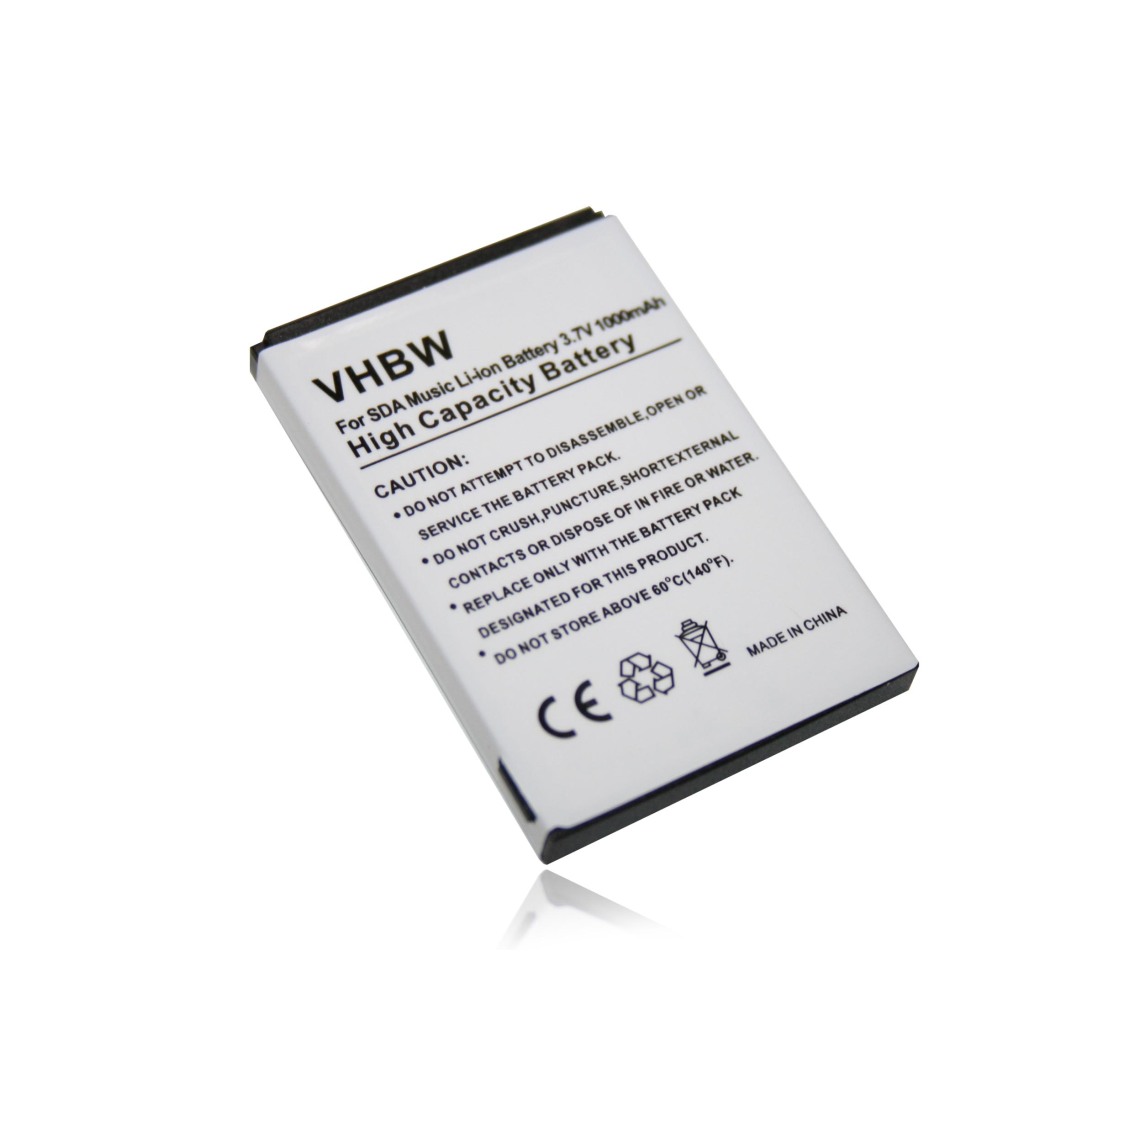 Vhbw - vhbw batterie remplace Fujitsu Siemens MN:10600731575, PLN100MB, S26391-F2613-L900 pour système de navigation GPS (1000mAh, 3,7V, Li-Ion) - Batterie téléphone